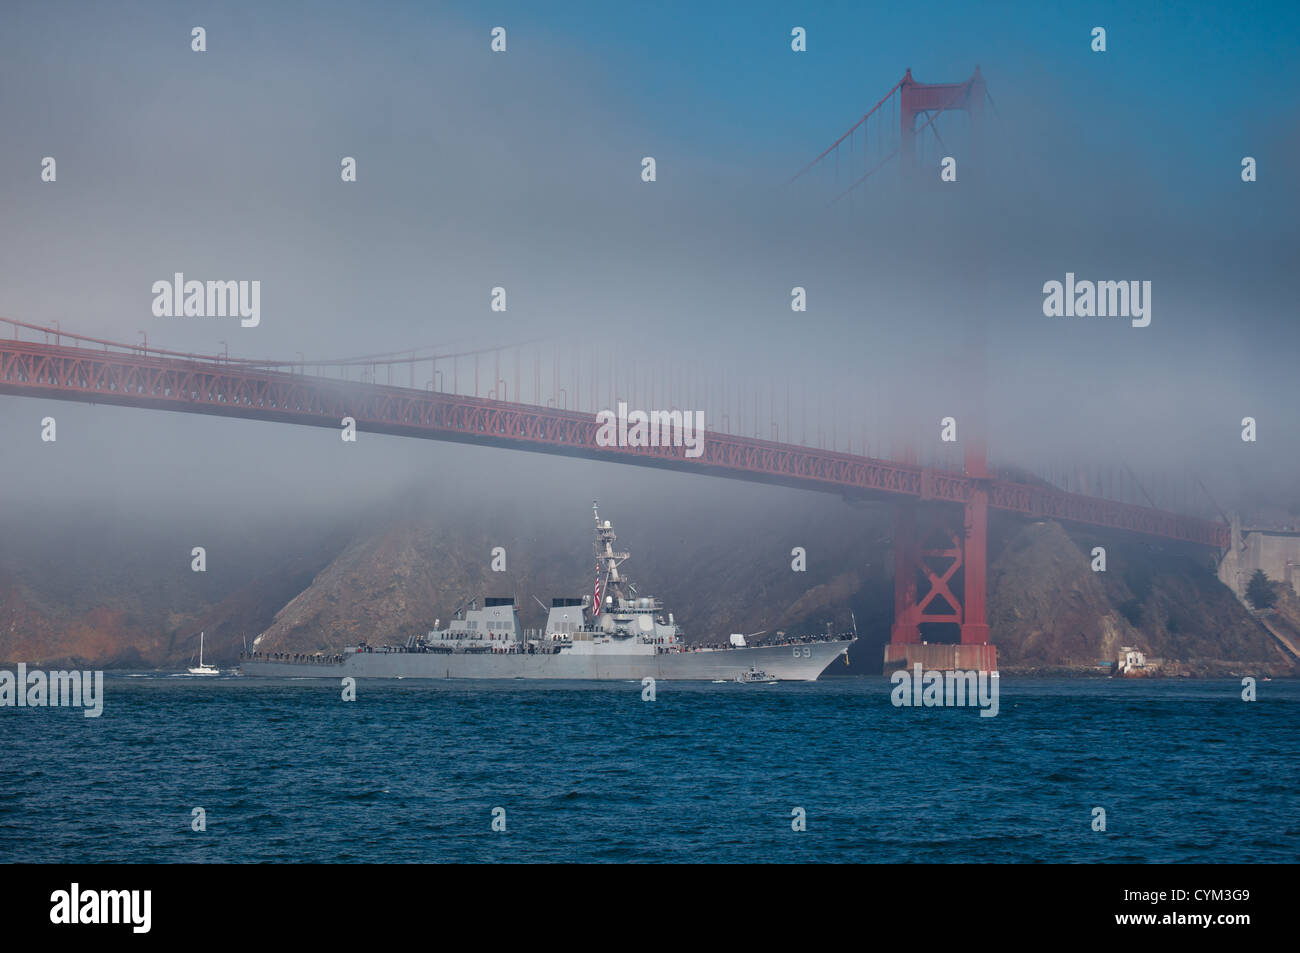 Uss milius, un missile distruttore, passa sotto il ponte del Golden Gate durante la settimana della flotta ottobre 8, 2011 in san francisco Foto Stock